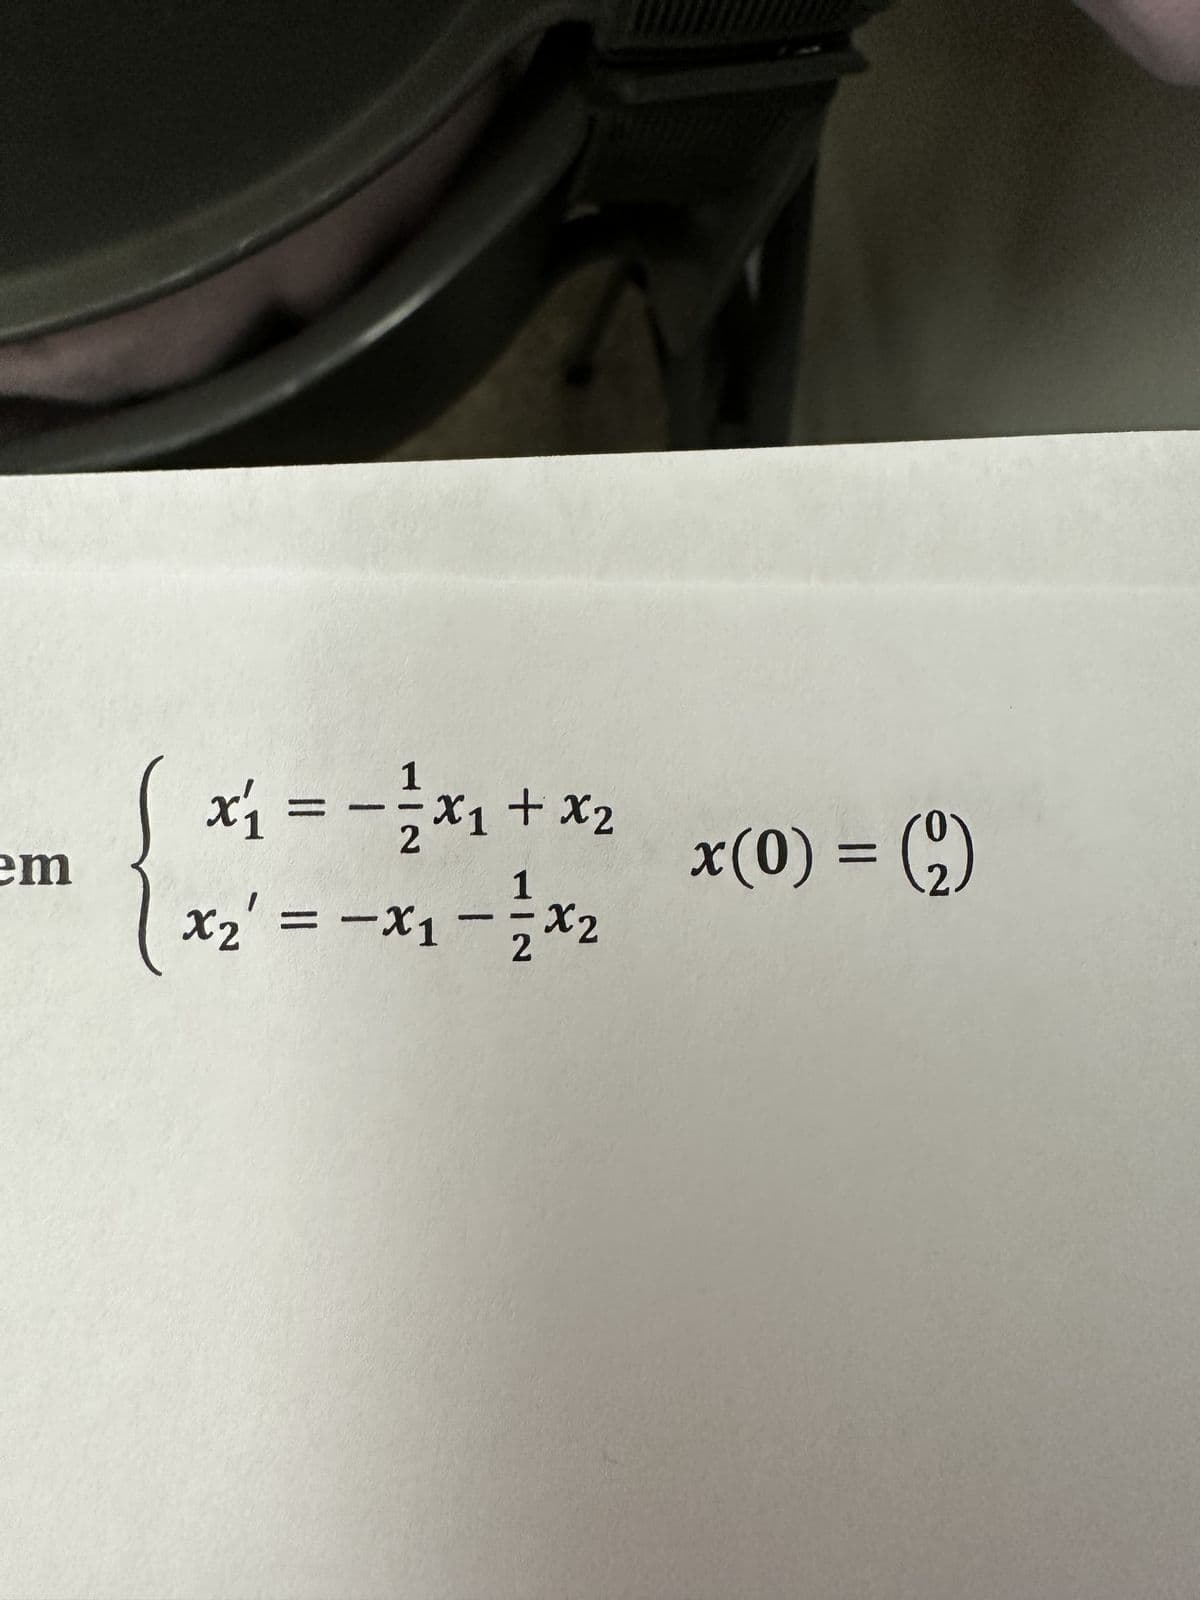 em
²x + ¹x² = 1x
1
x₂ = -x₁ X2
2
x(0) = (2)